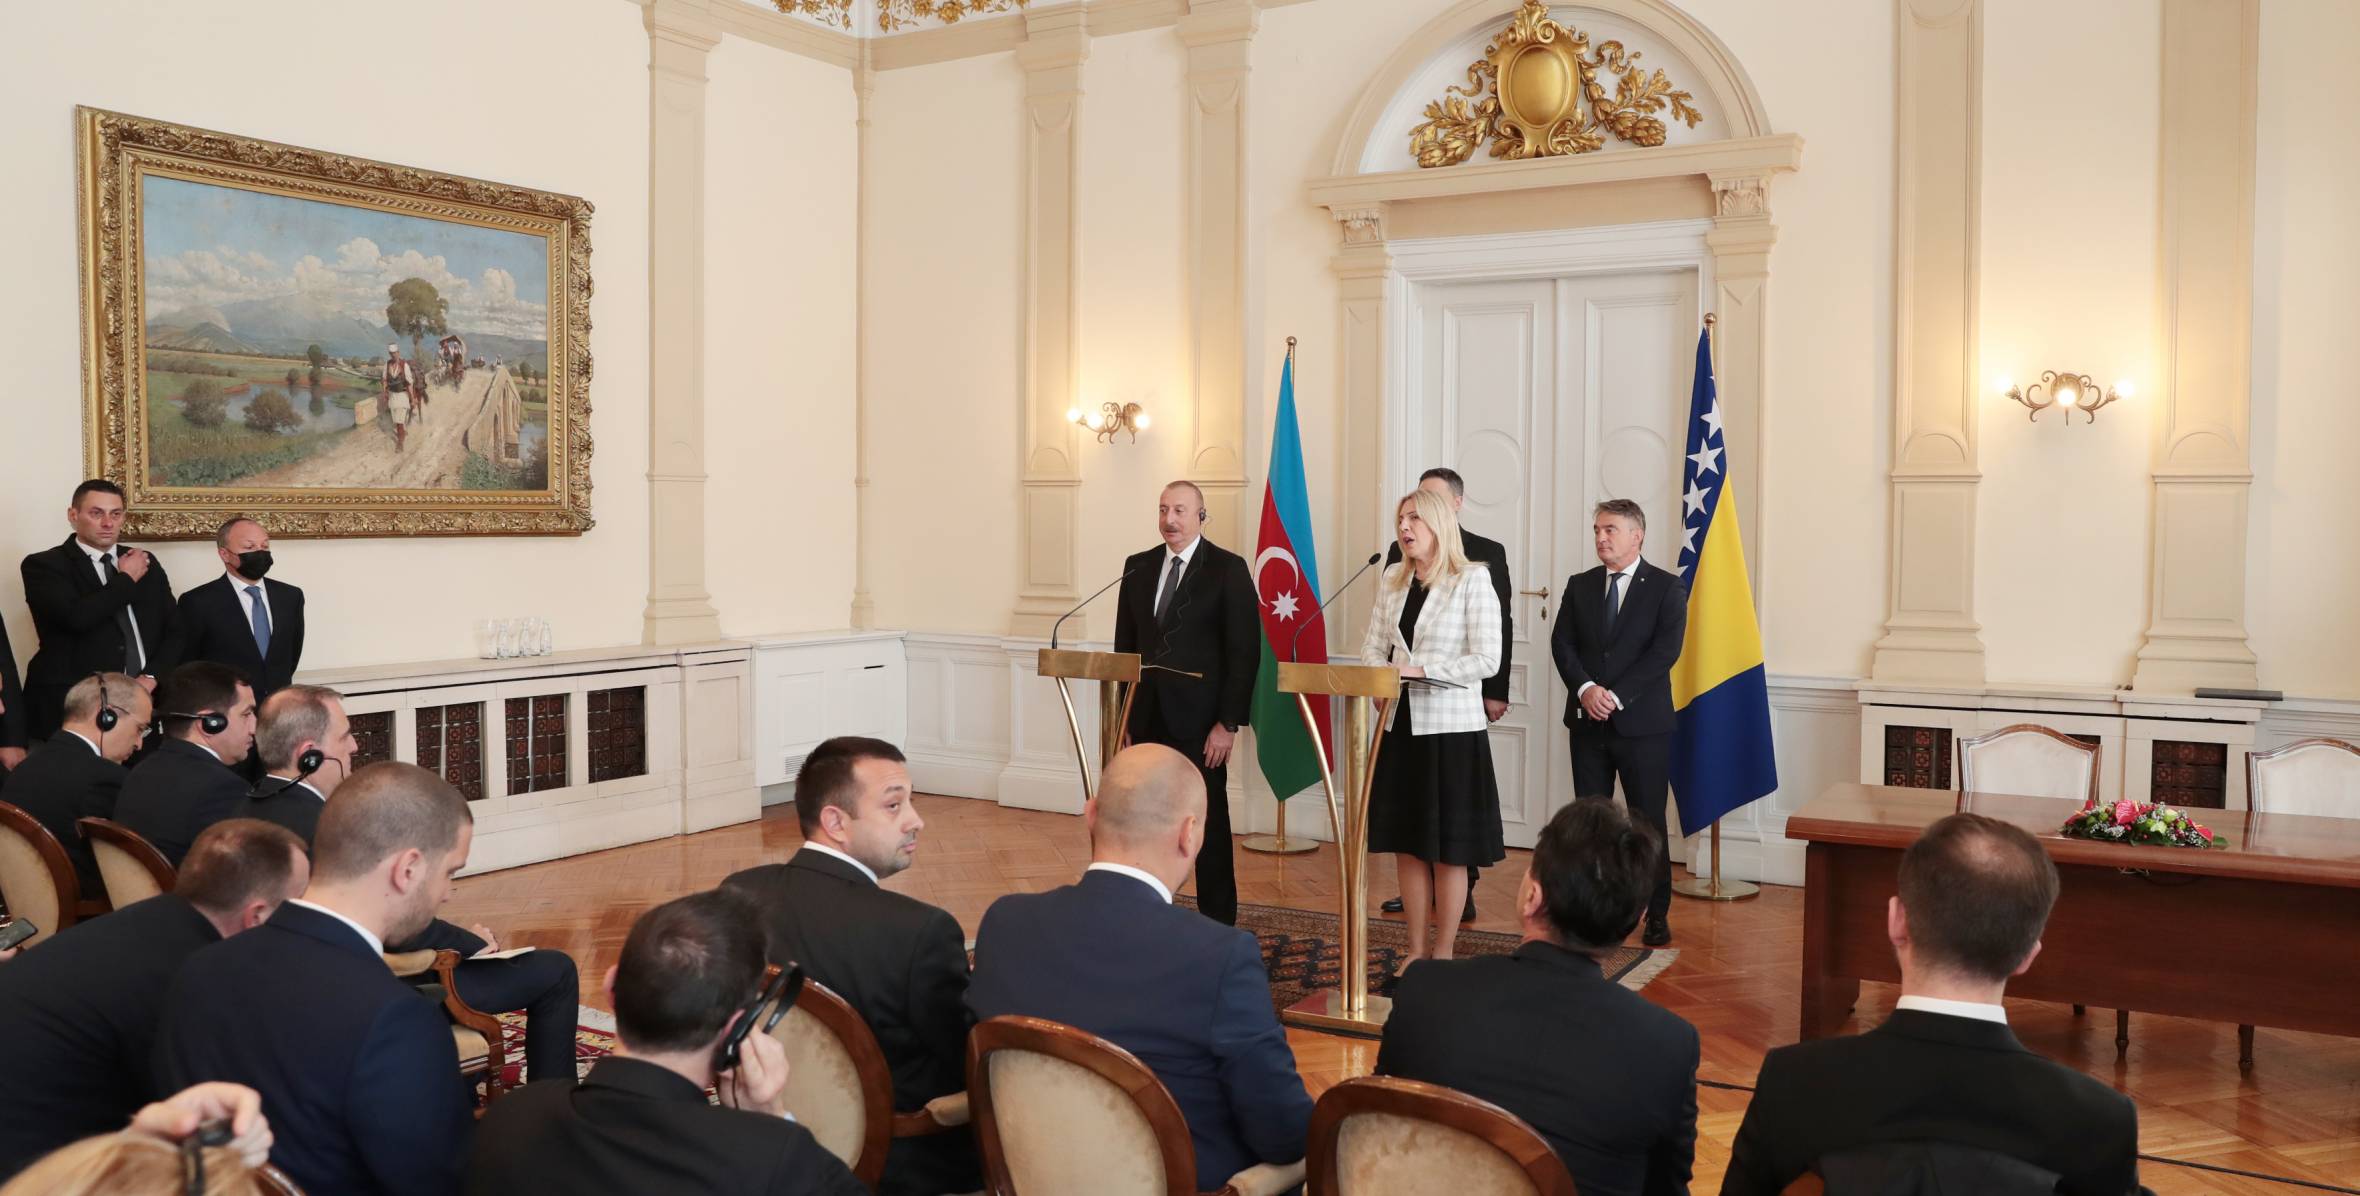 Ильхам Алиев и Председатель Президиума Боснии и Герцеговины Желка Цвиянович выступили с заявлениями для прессы